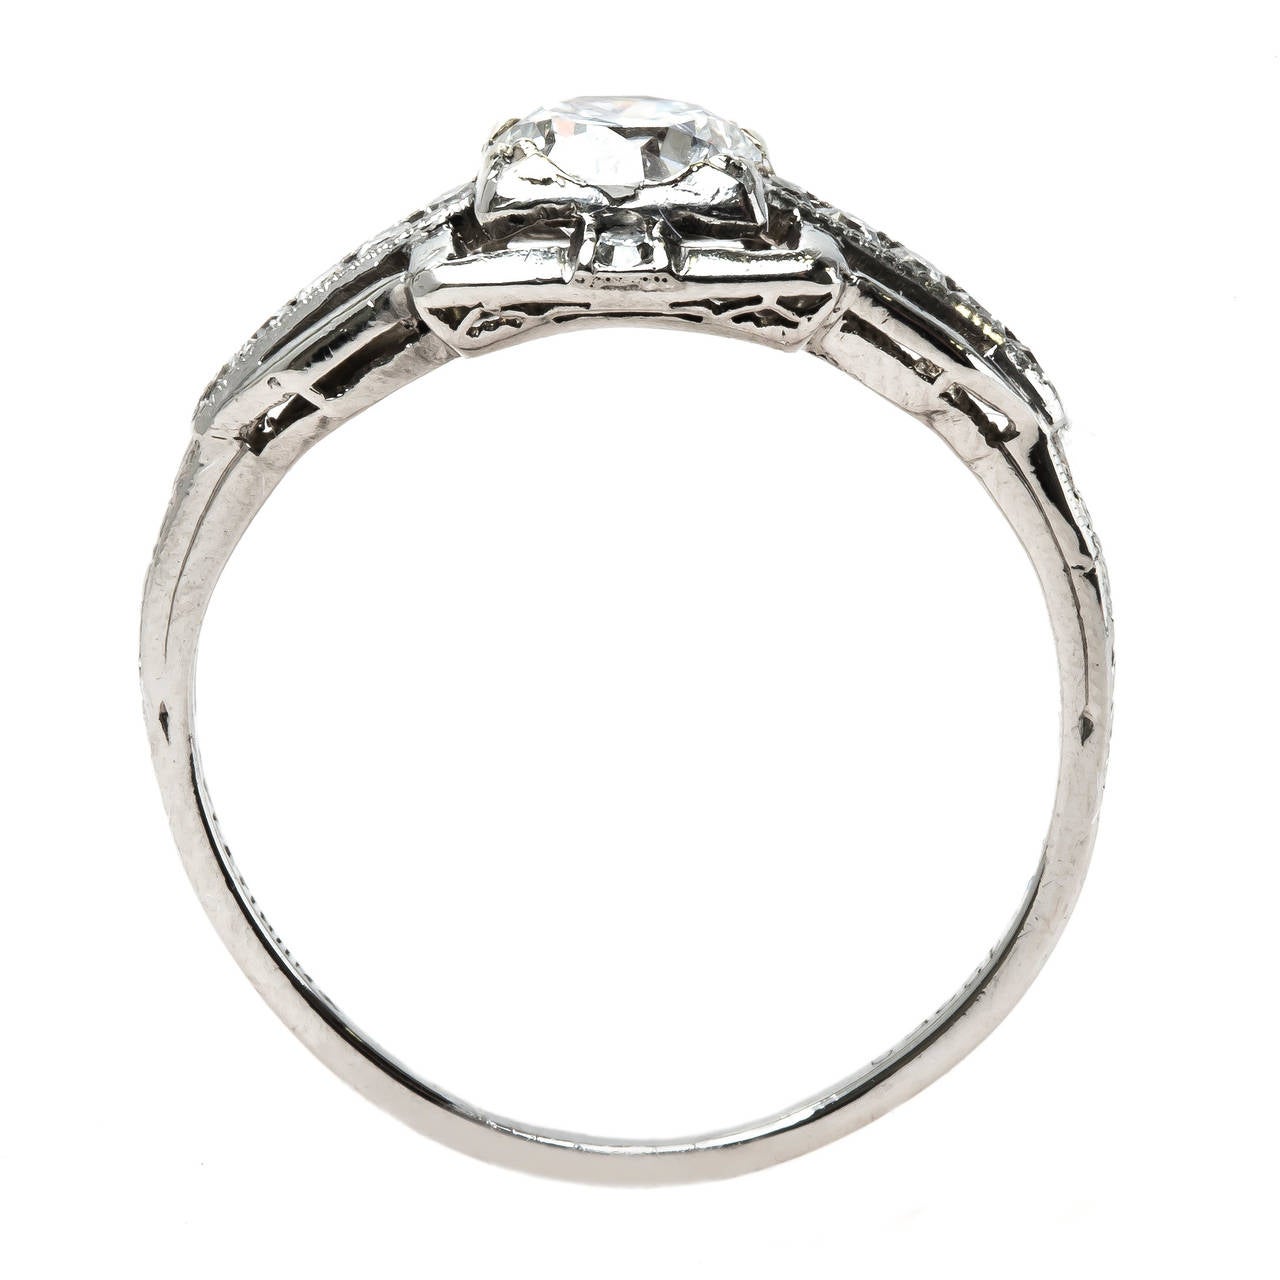 Classic Art Deco Round Brilliant Cut Diamond Platinum Engagement Ring For Sale 1